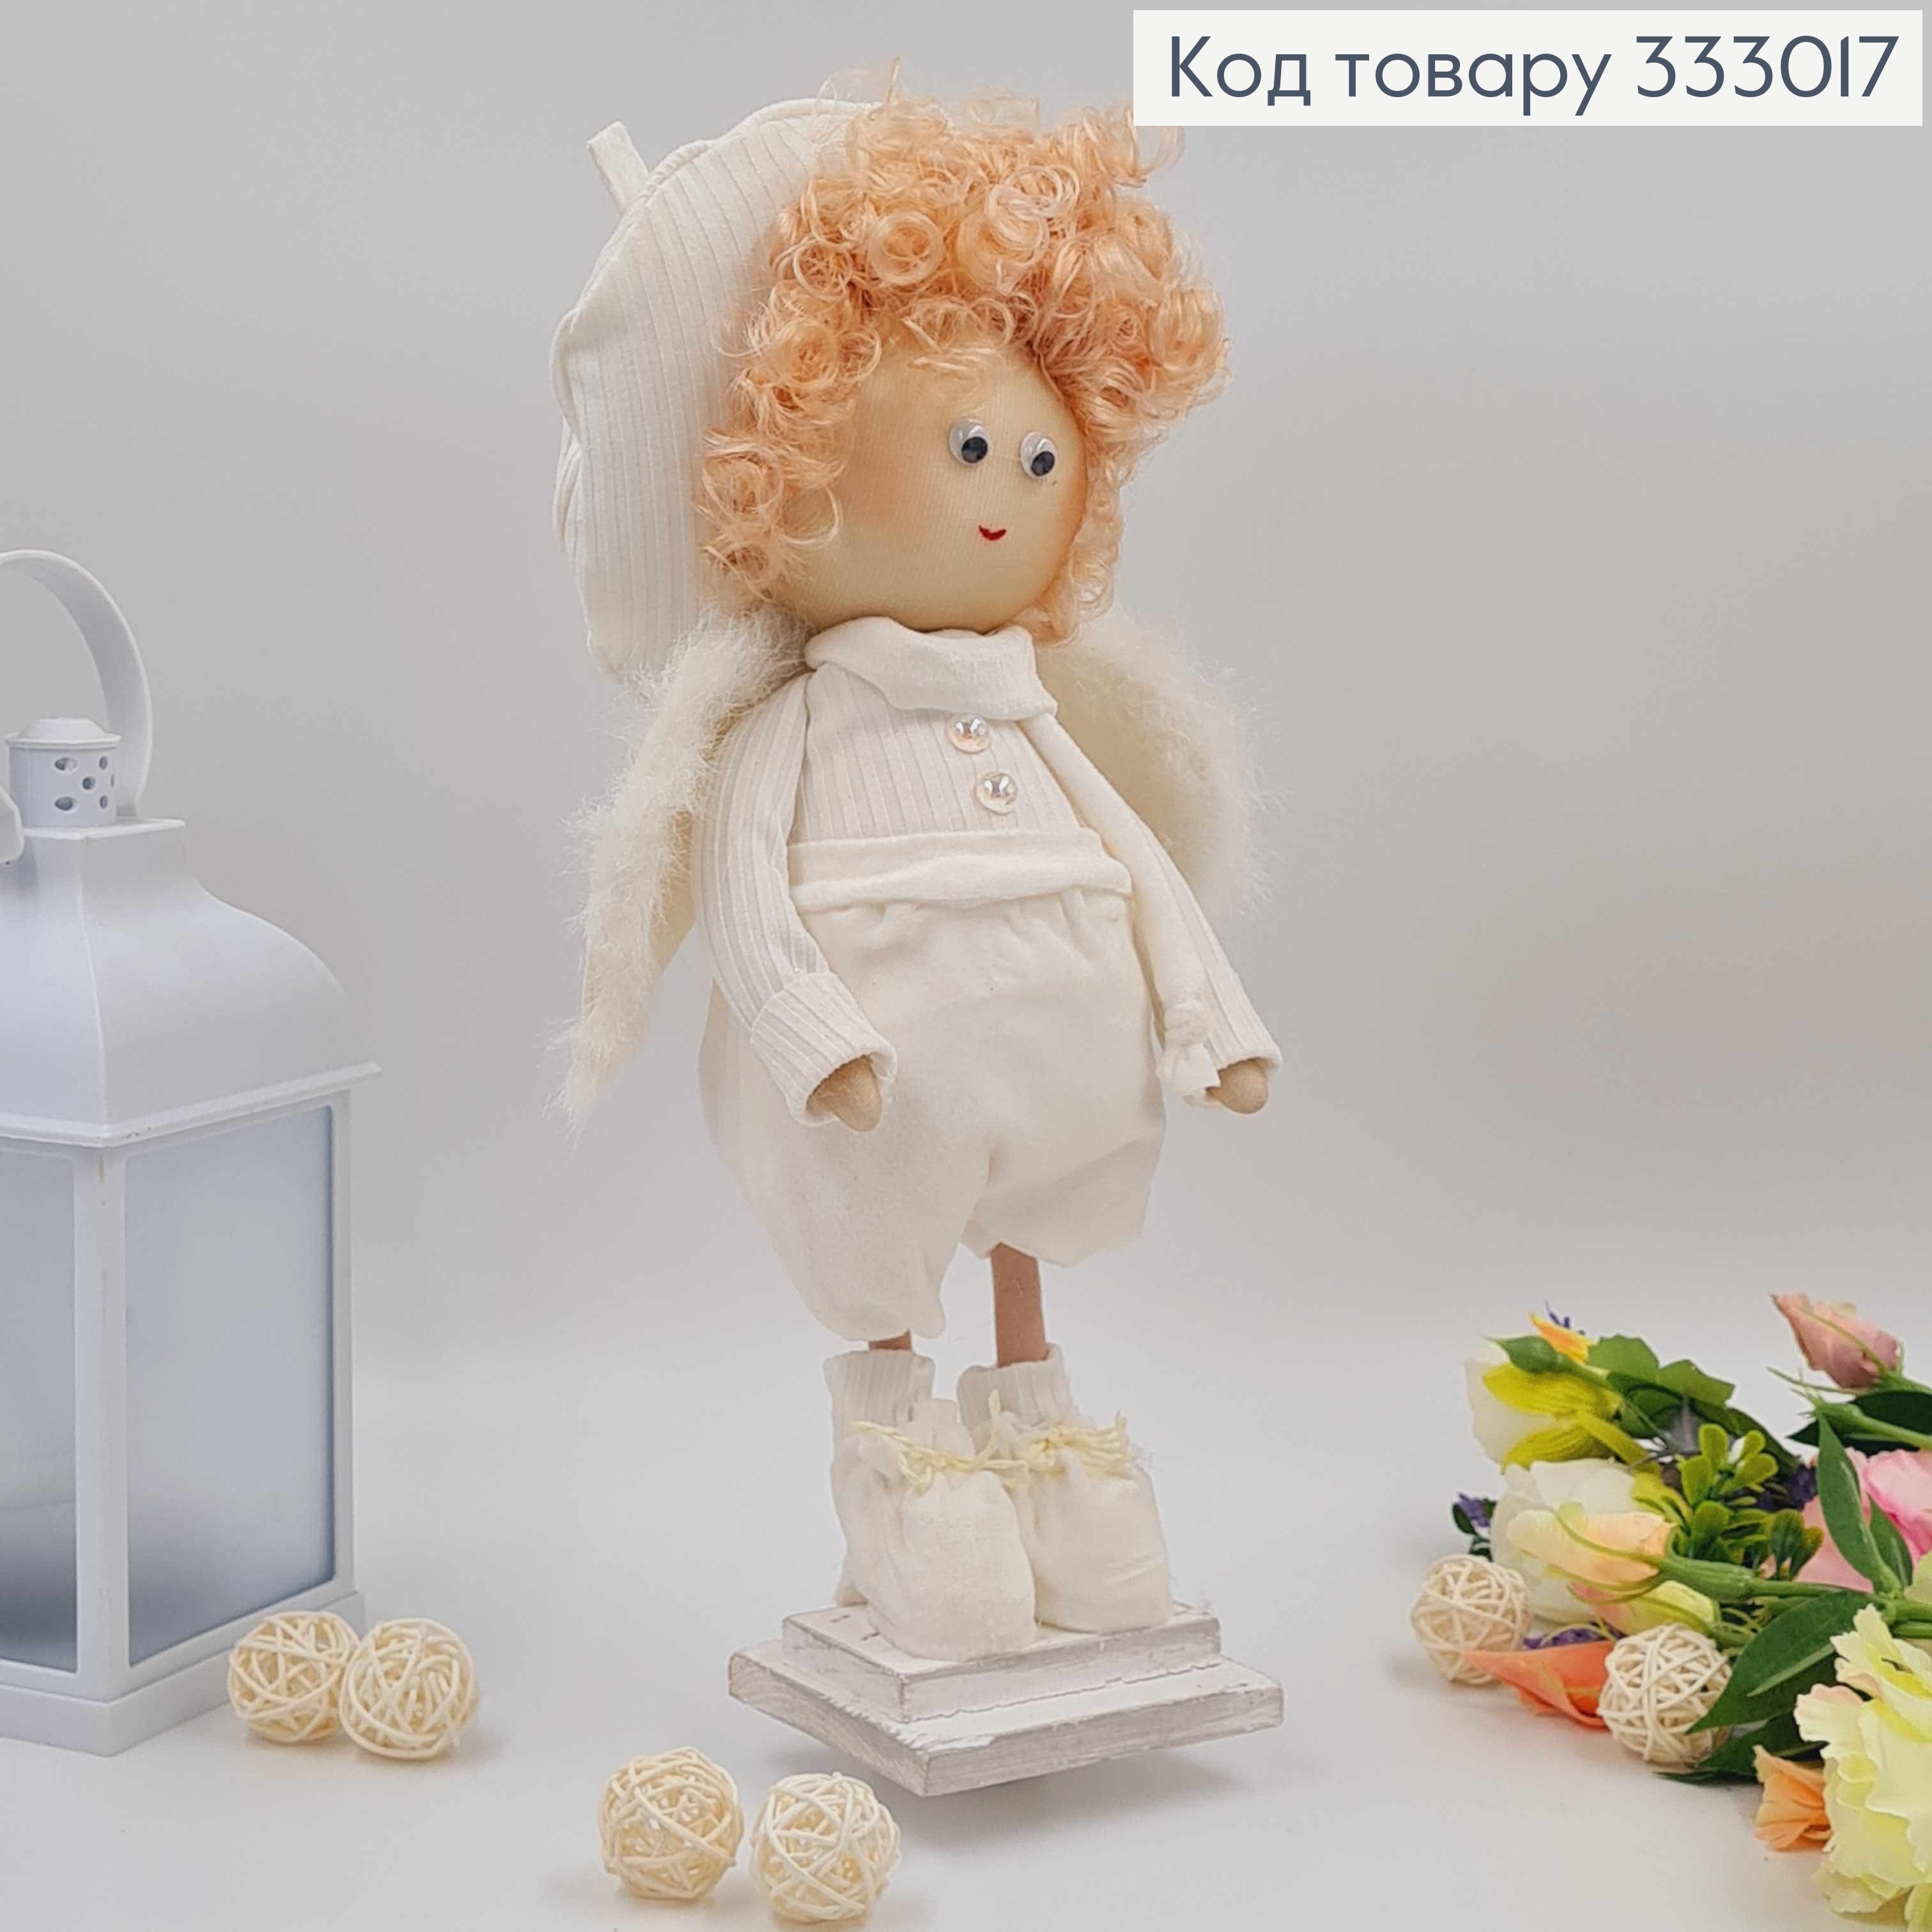 Кукла АМУРЧИК в берете, молочный цвет, высота 35см,ручная работа, Украина. 333017 фото 2